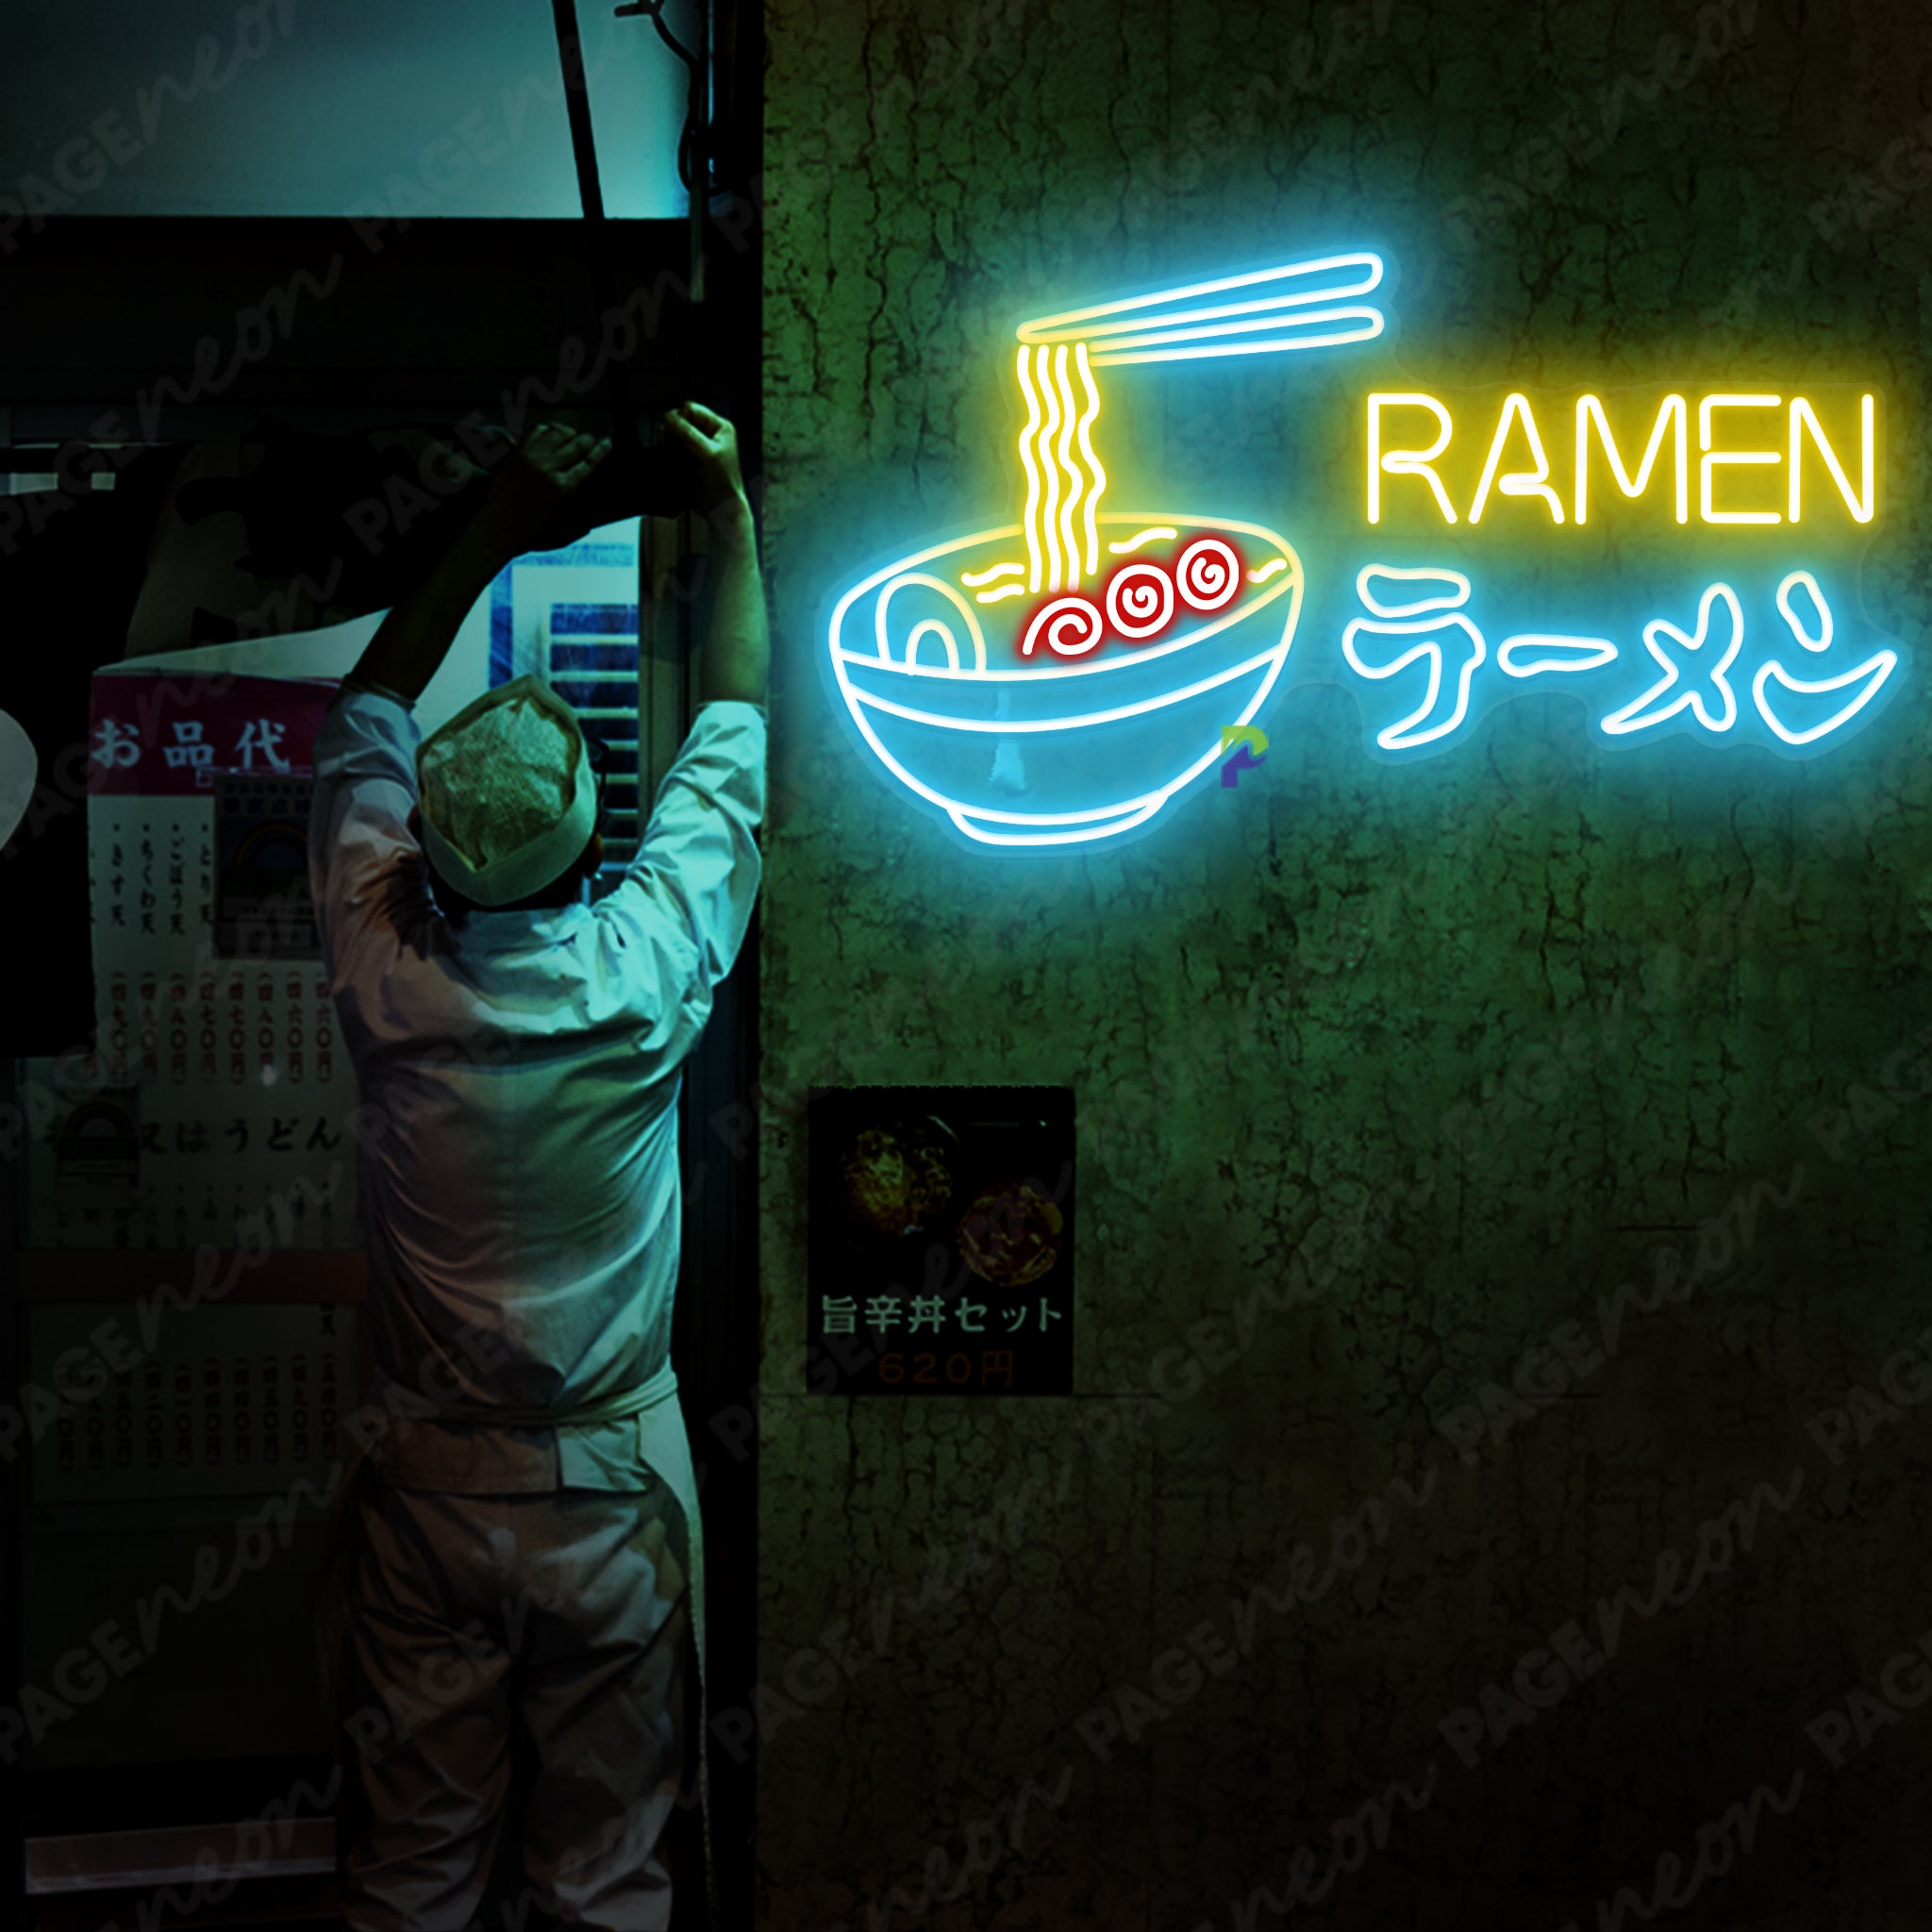 Ramen Japanese Neon Sign LED Light LightBlue